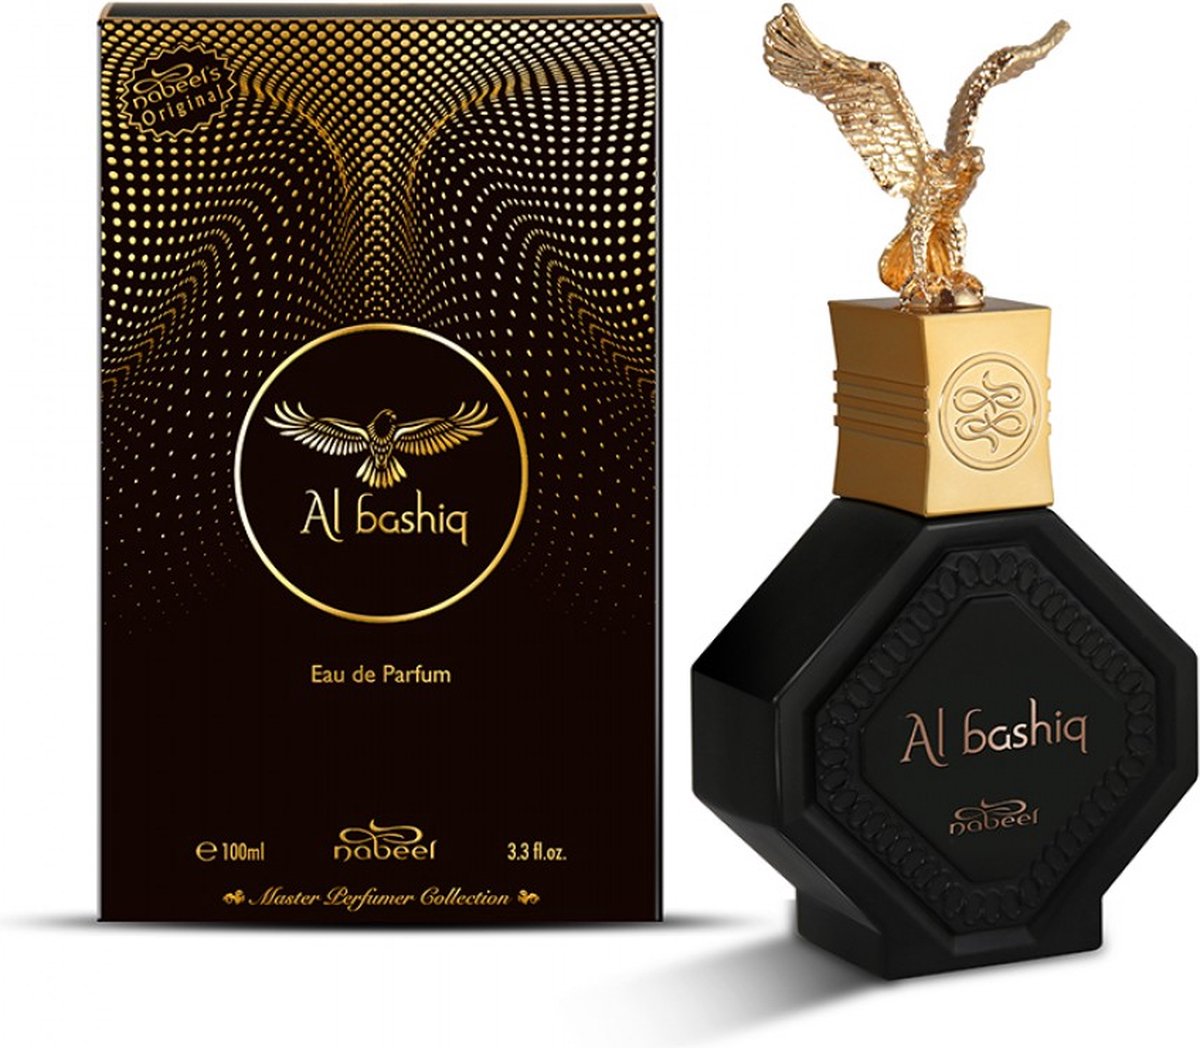 NABEEL Al Bashiq Eau de Parfum 100ml - Oud parfum